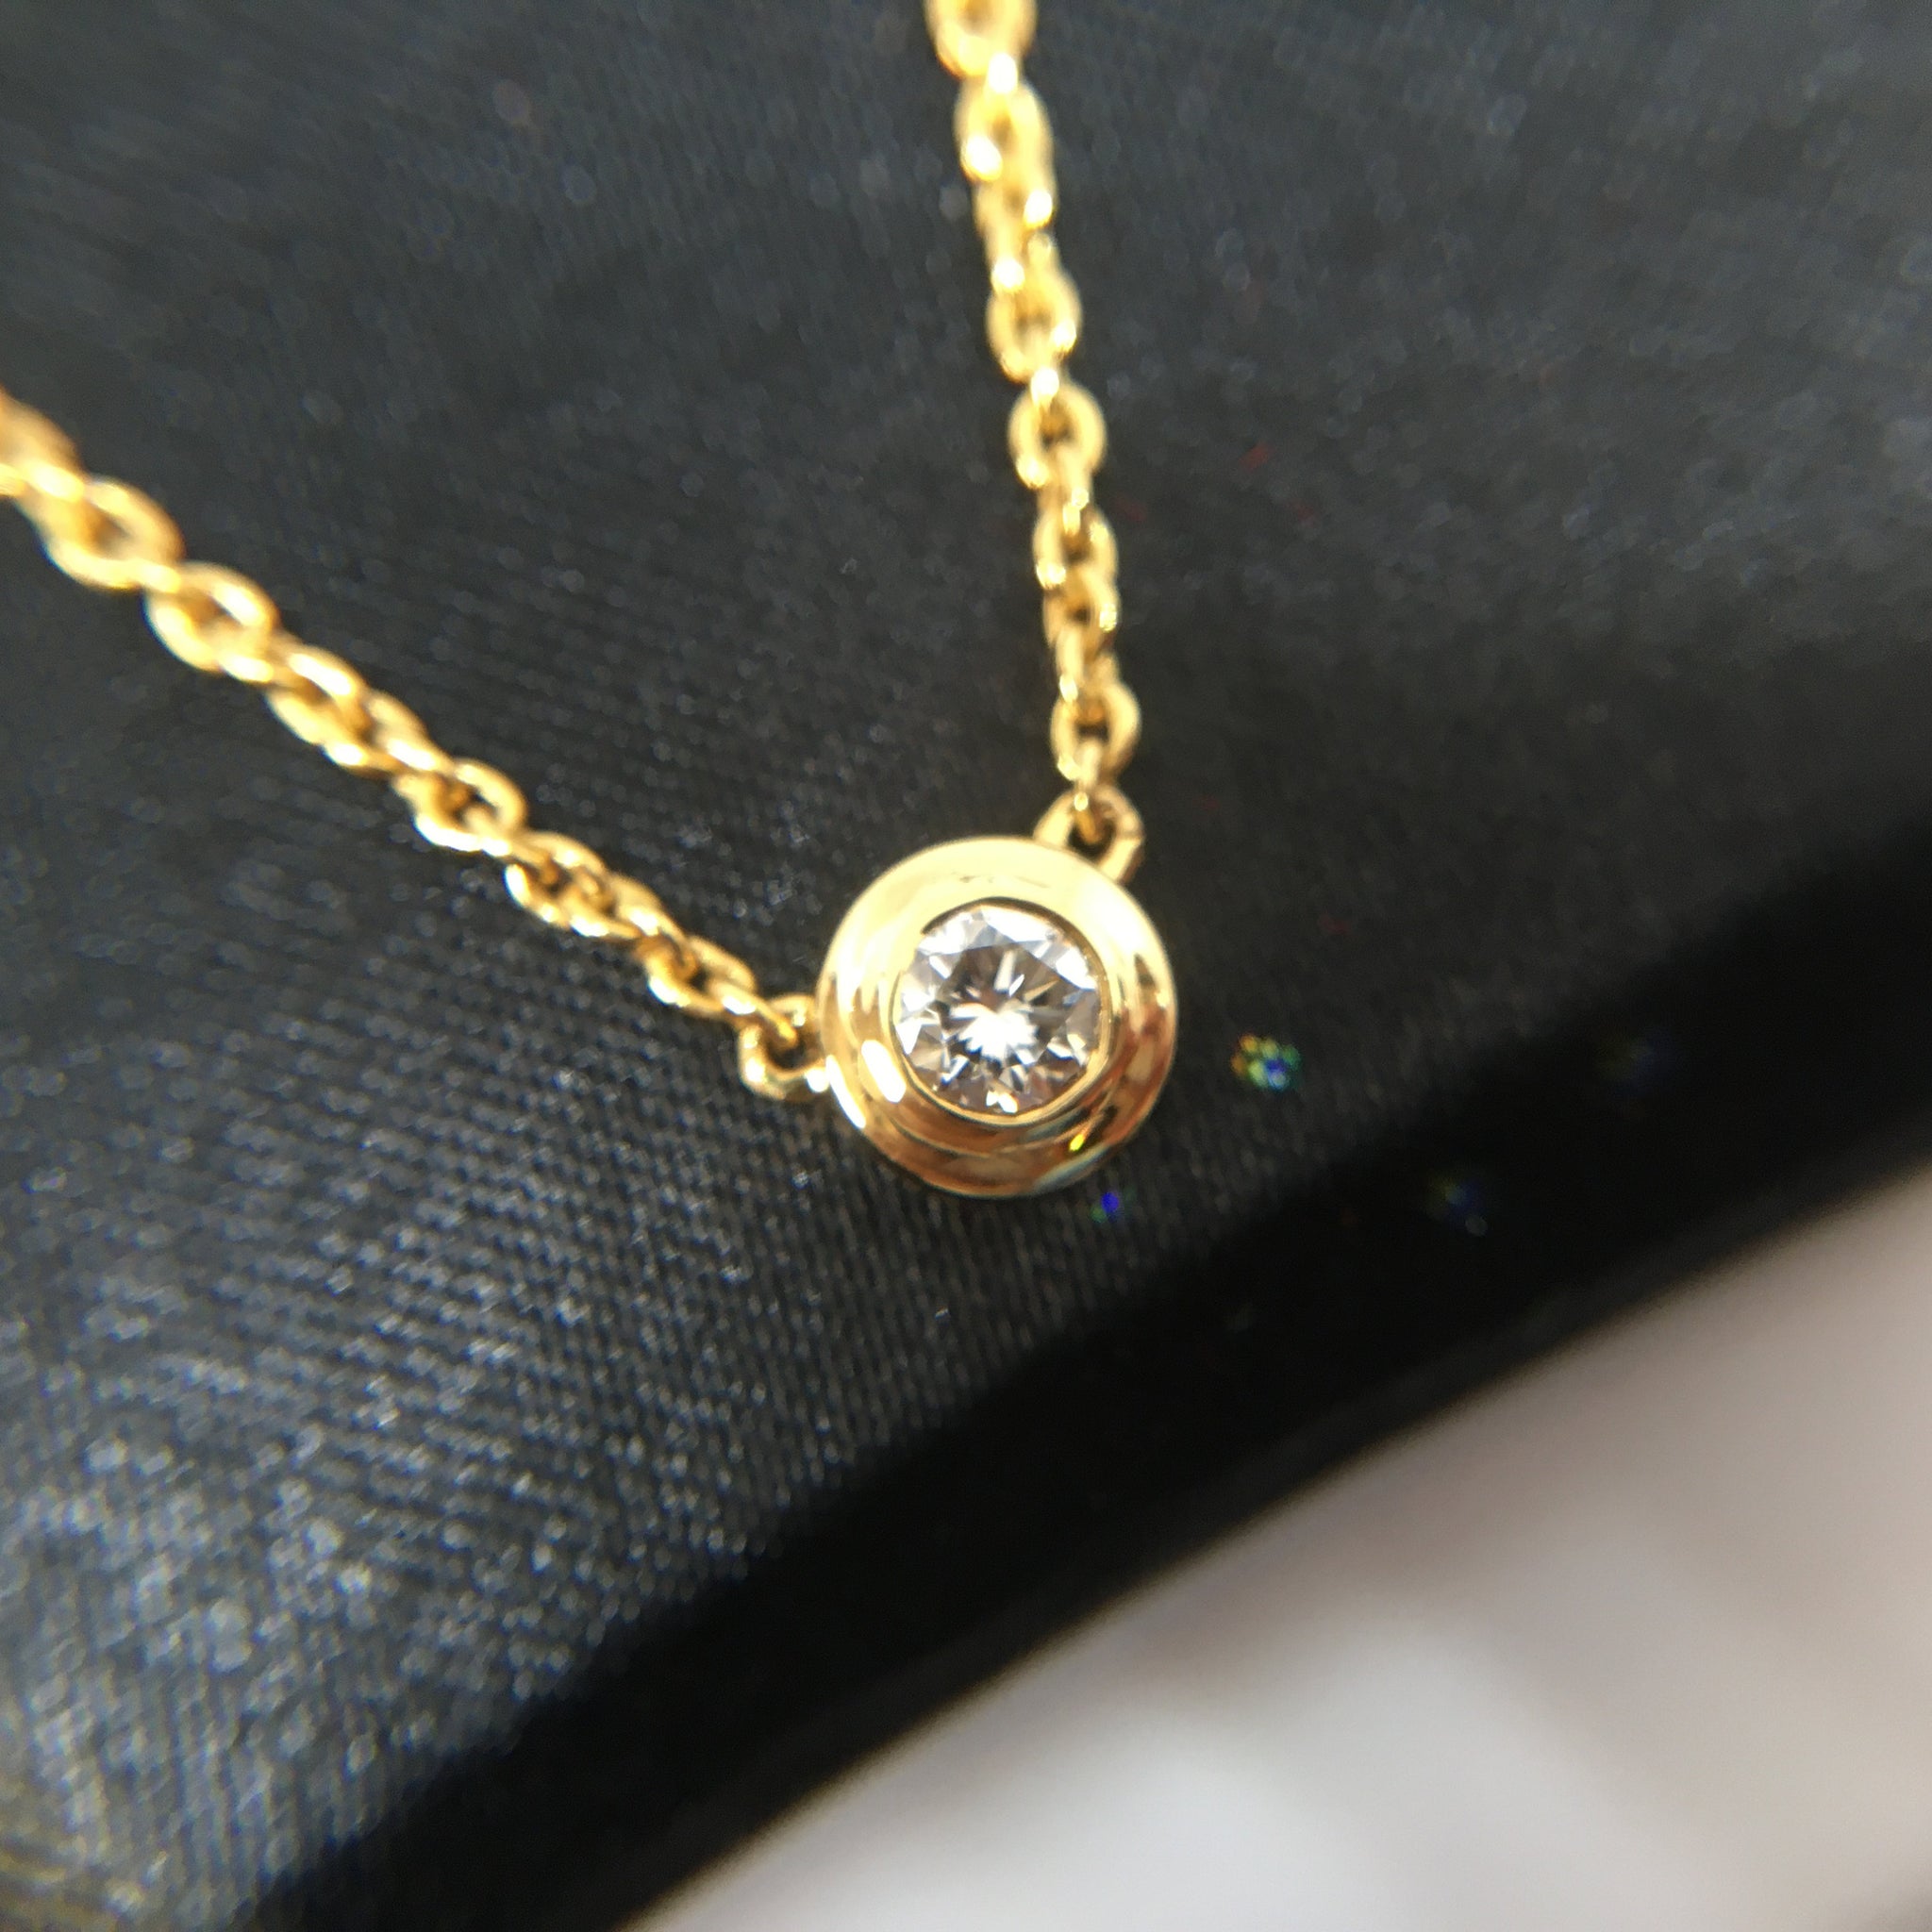 14k Gold Diamond Solitaire Necklace / Lunette Réglage Solitaire Minimalist Necklace / Delicate Diamond Necklace /Diamond Choker / Gift for Mom